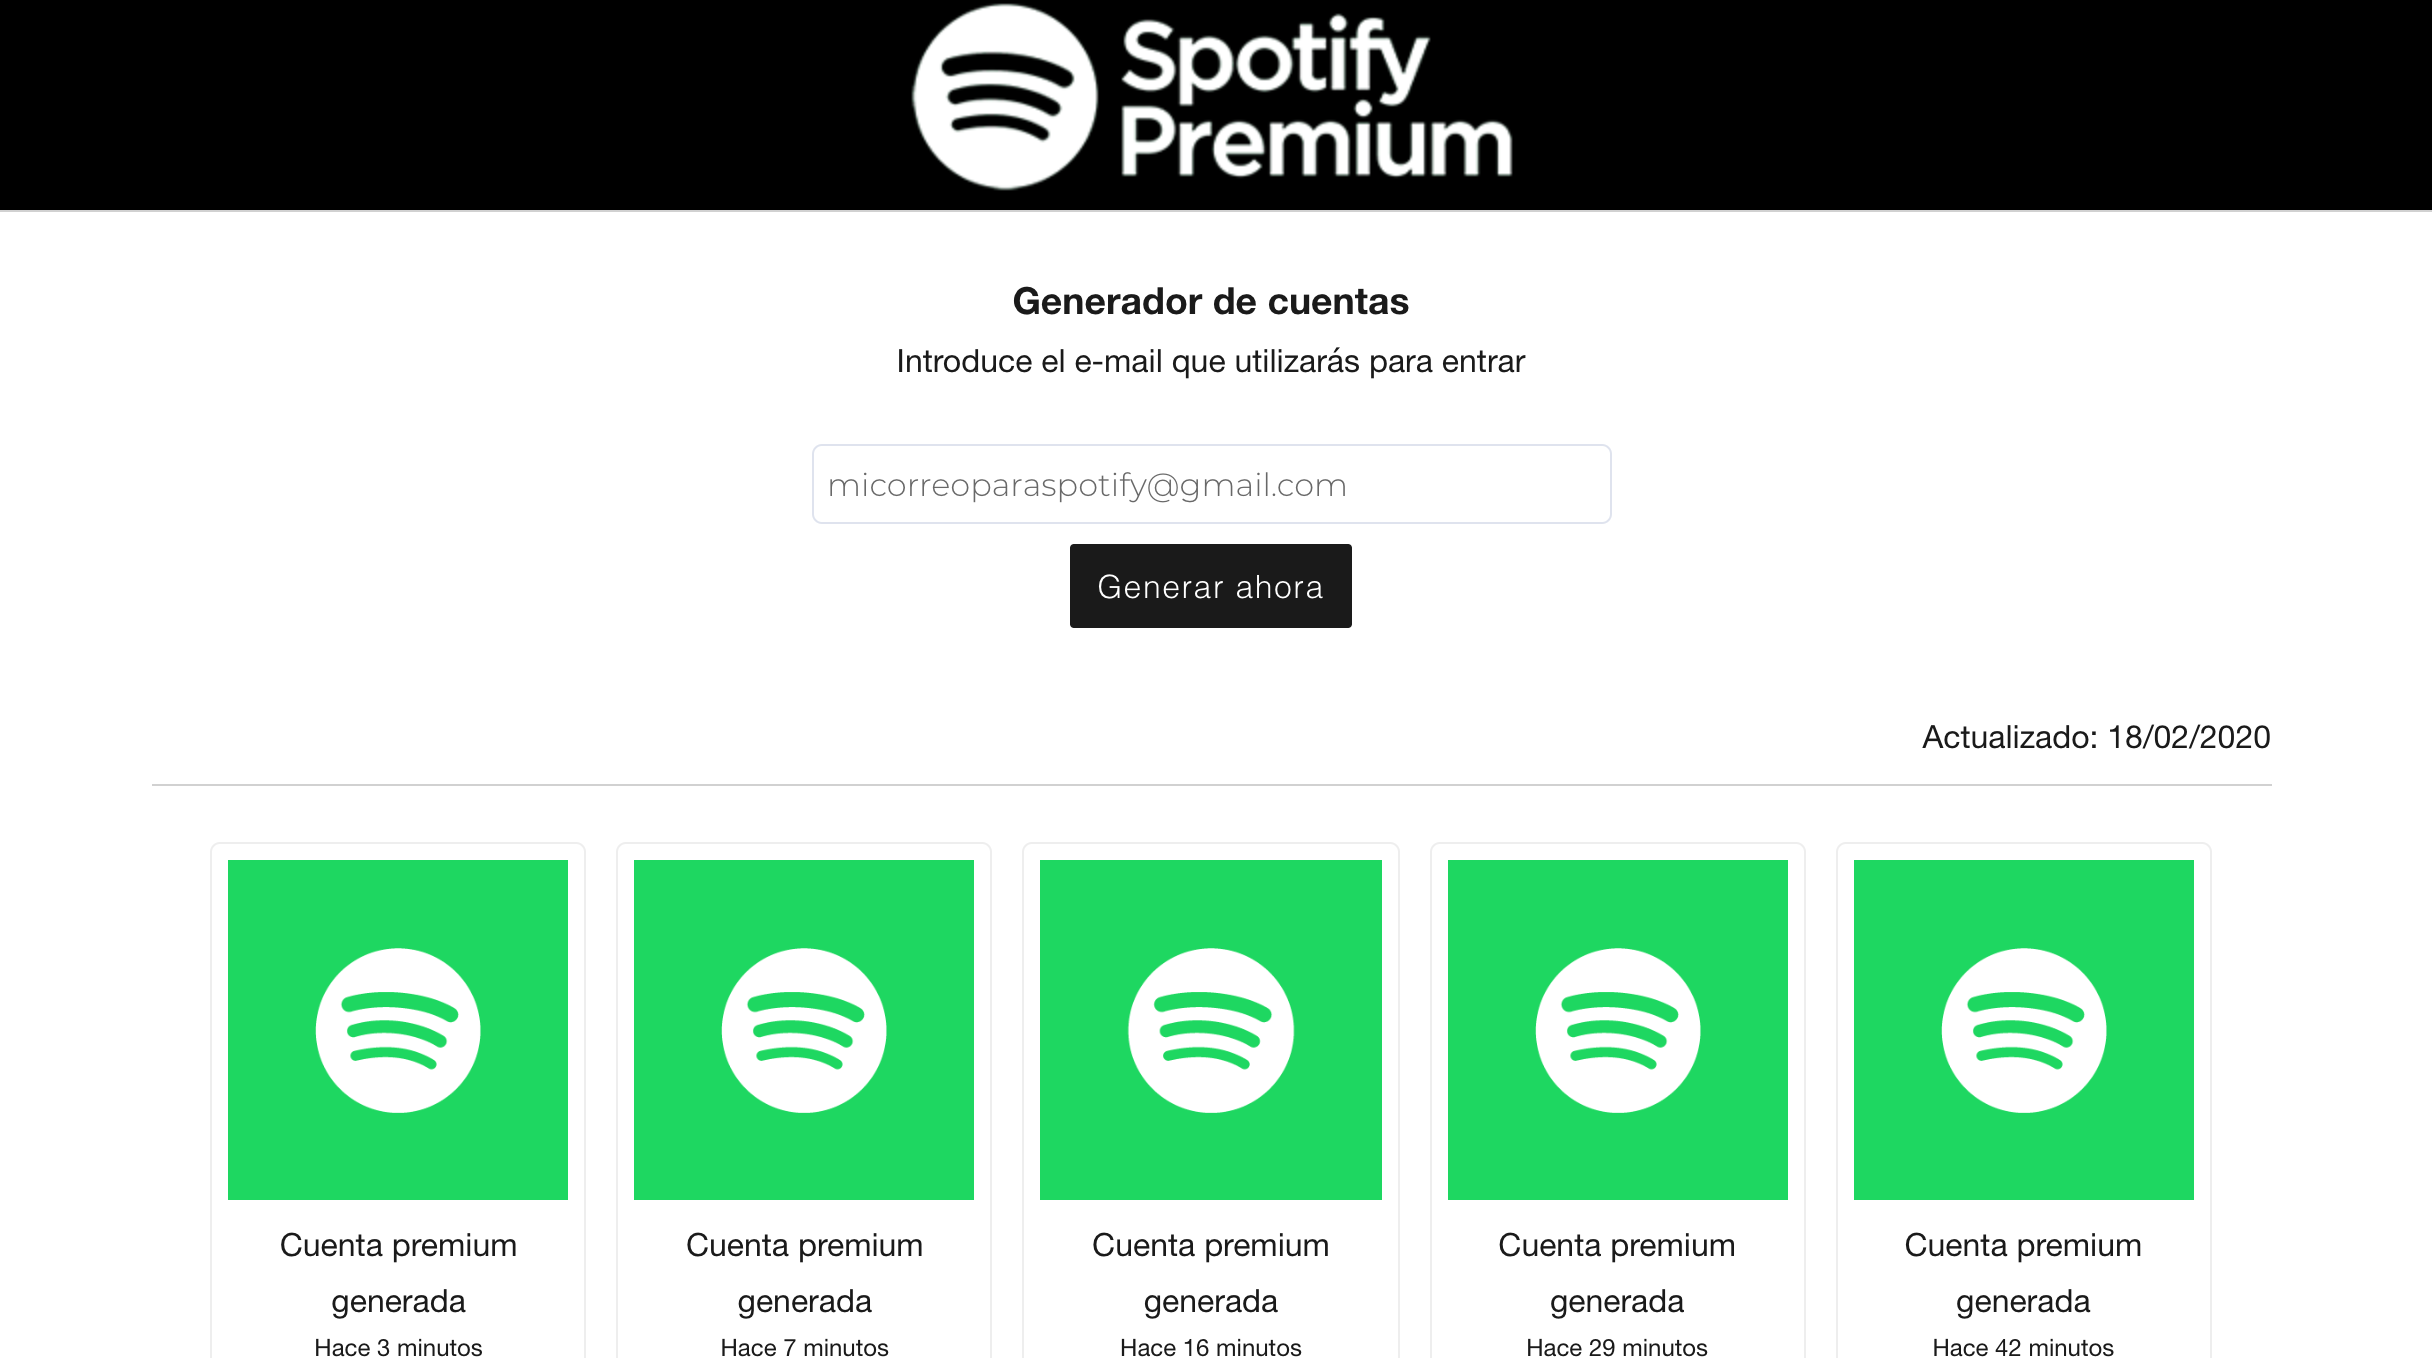 Generador De Cuentas Spotify Premium Teletype